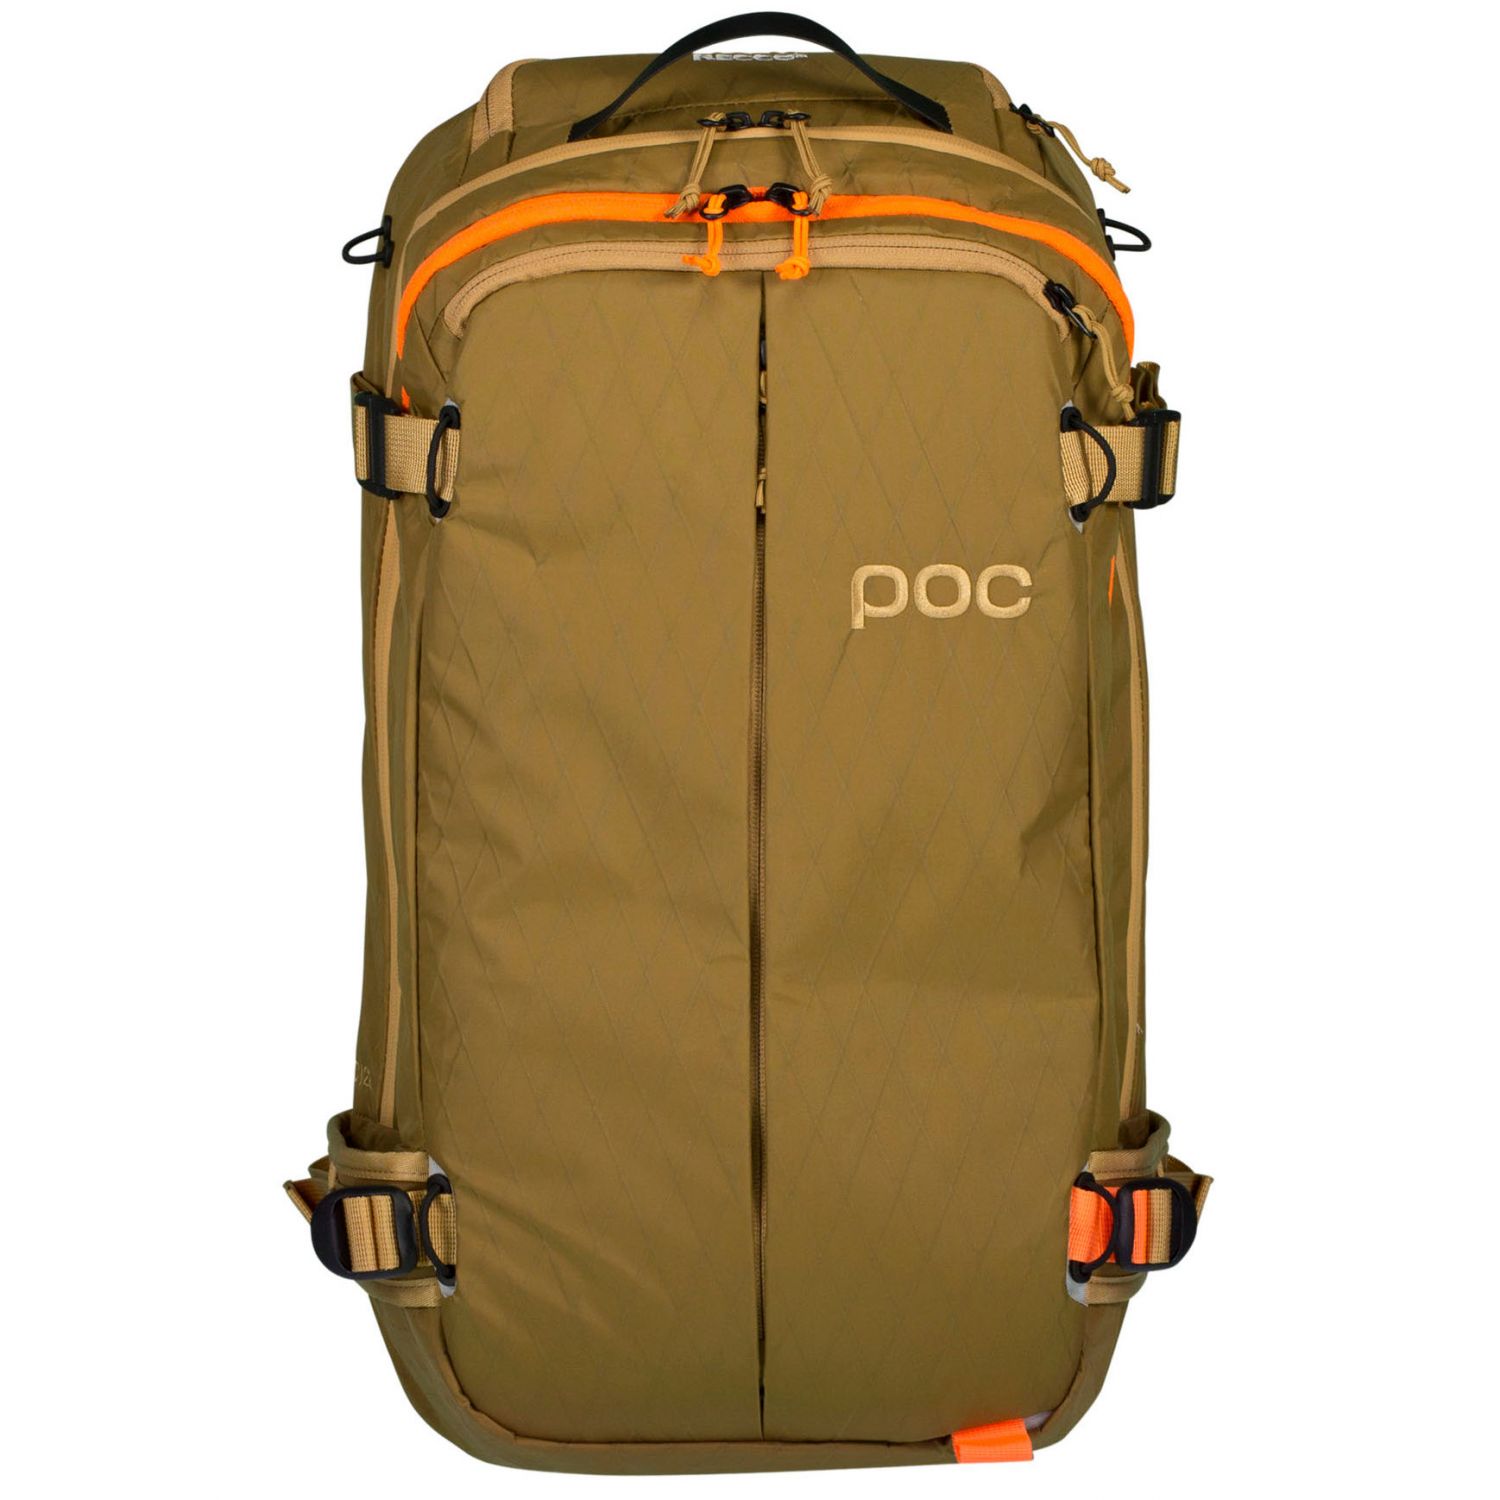 Billede af POC Dimension VPD Backpack, brun hos AktivVinter.dk